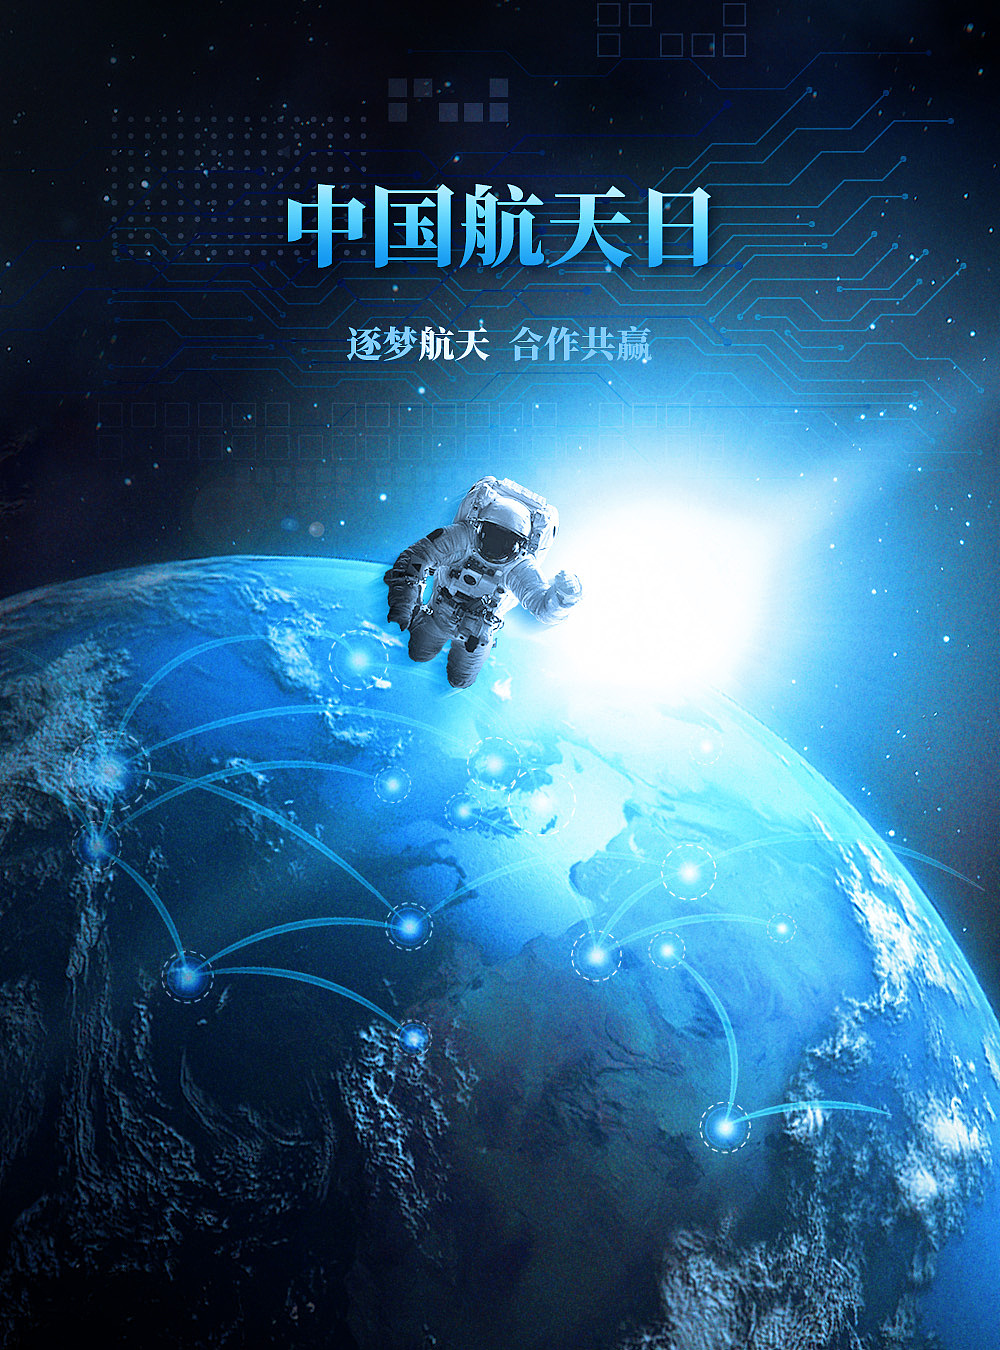 中国航天日集团图片